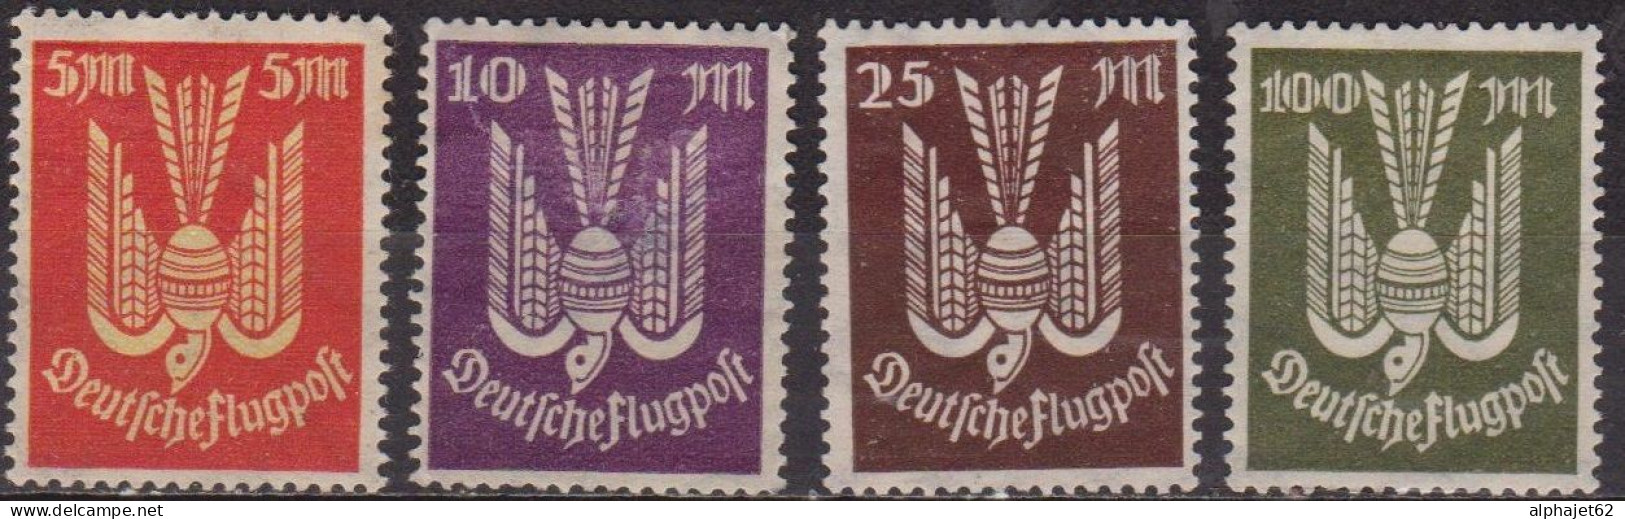 Oiseau - ALLEMAGNE - Deutsche Flugpost - Poste Aérienne - N° 15-16-17-18 * - 1922 - Luft- Und Zeppelinpost